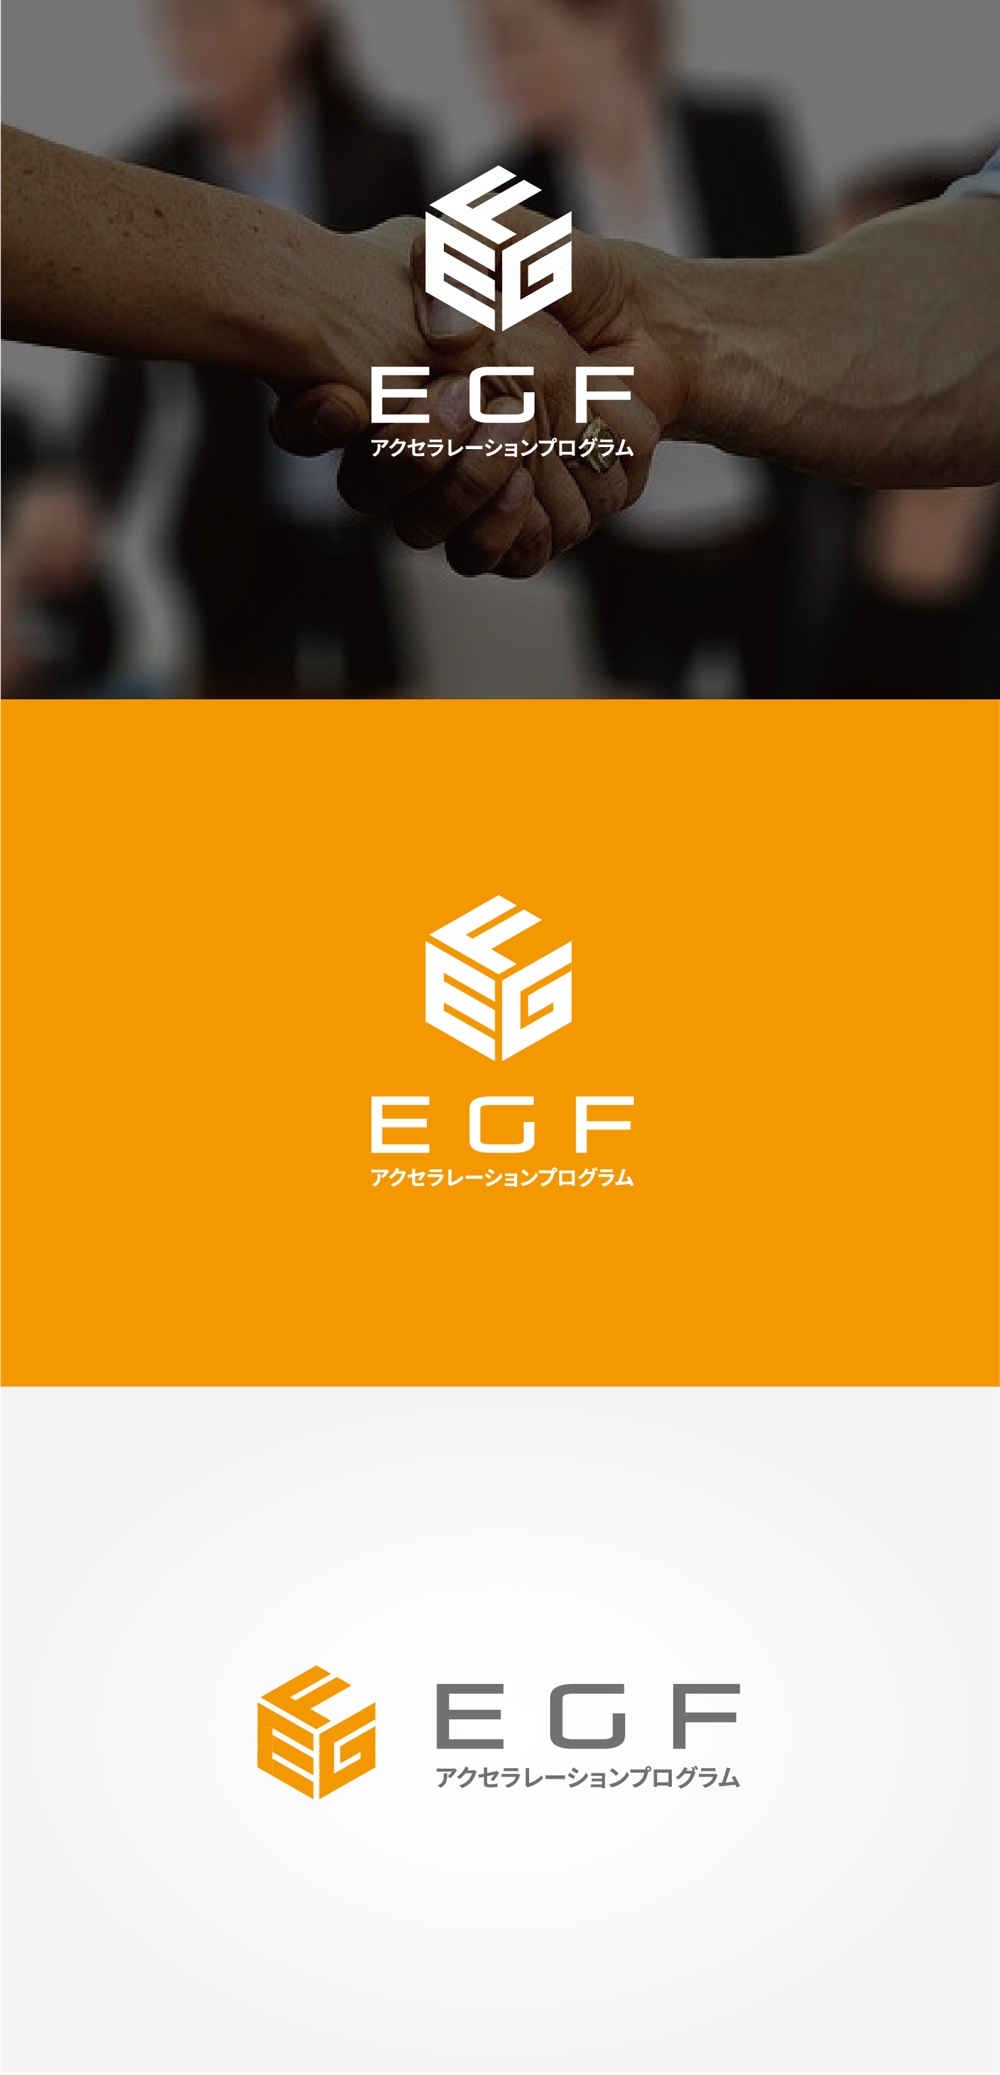 県の「創業支援プログラム」で使用するロゴのデザイン